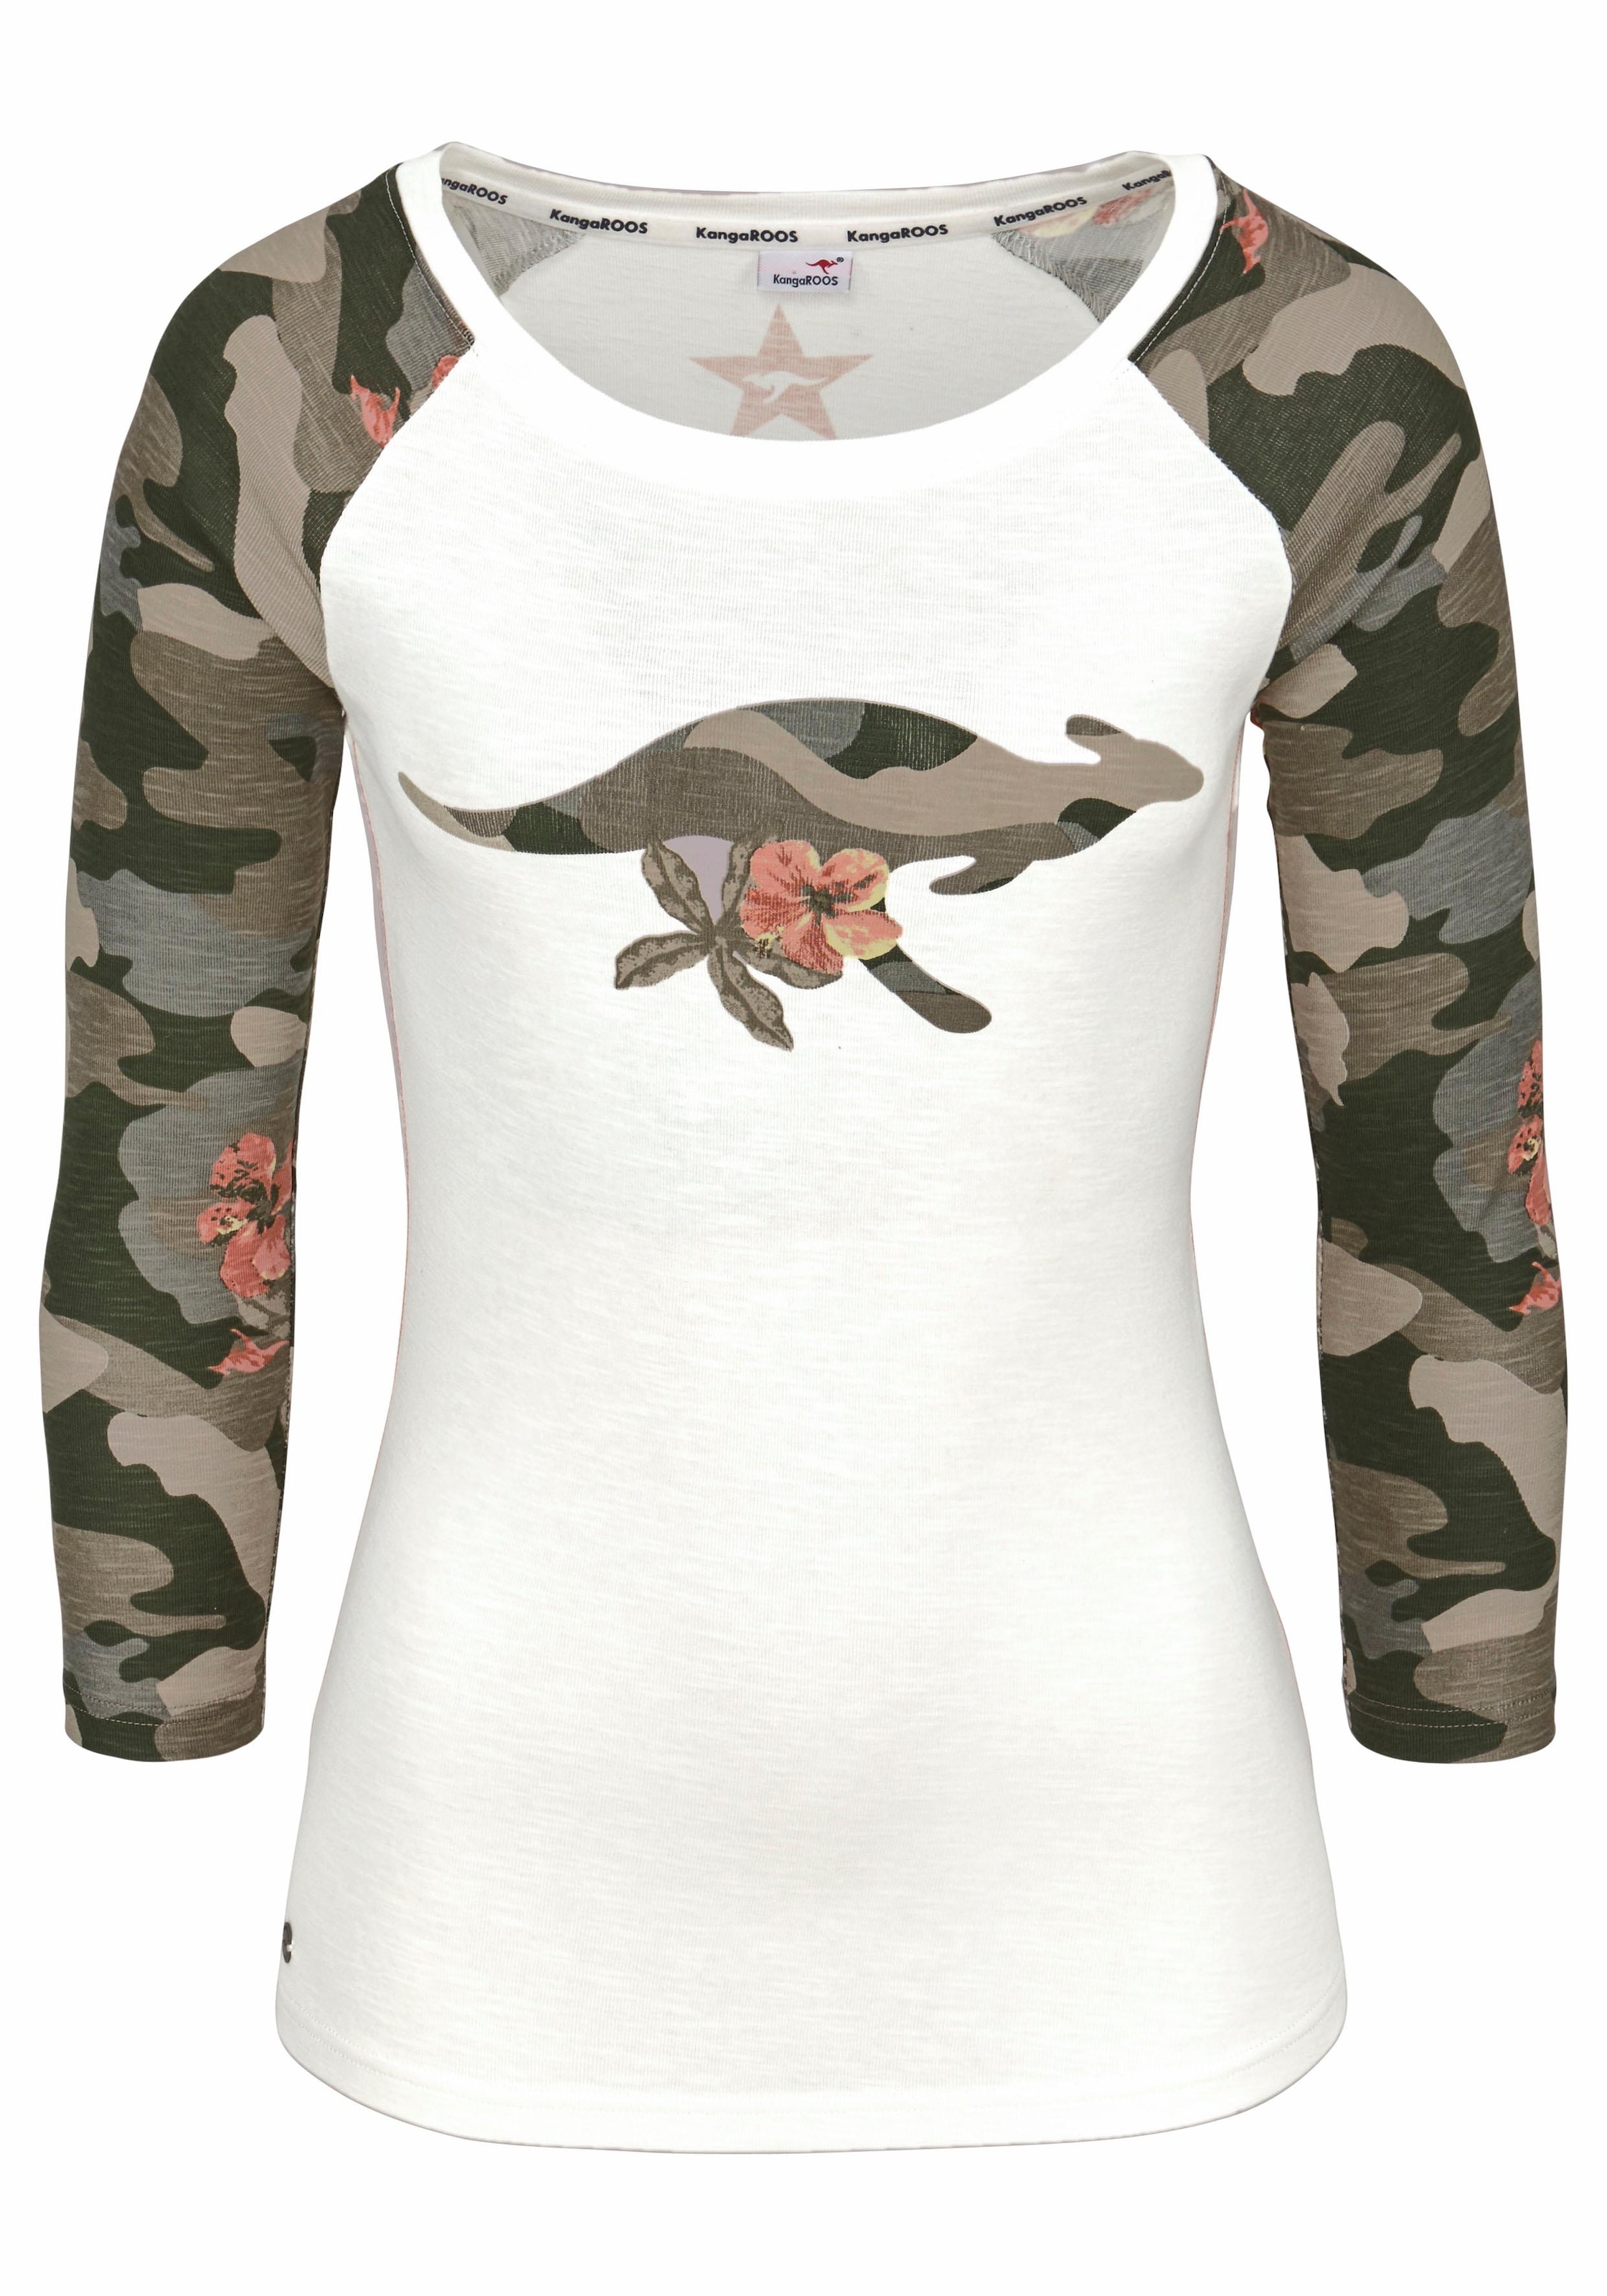 mit Front-Print und KangaROOS ♕ bei Camouflage-Ärmeln 3/4-Arm-Shirt, tarnfarbenen